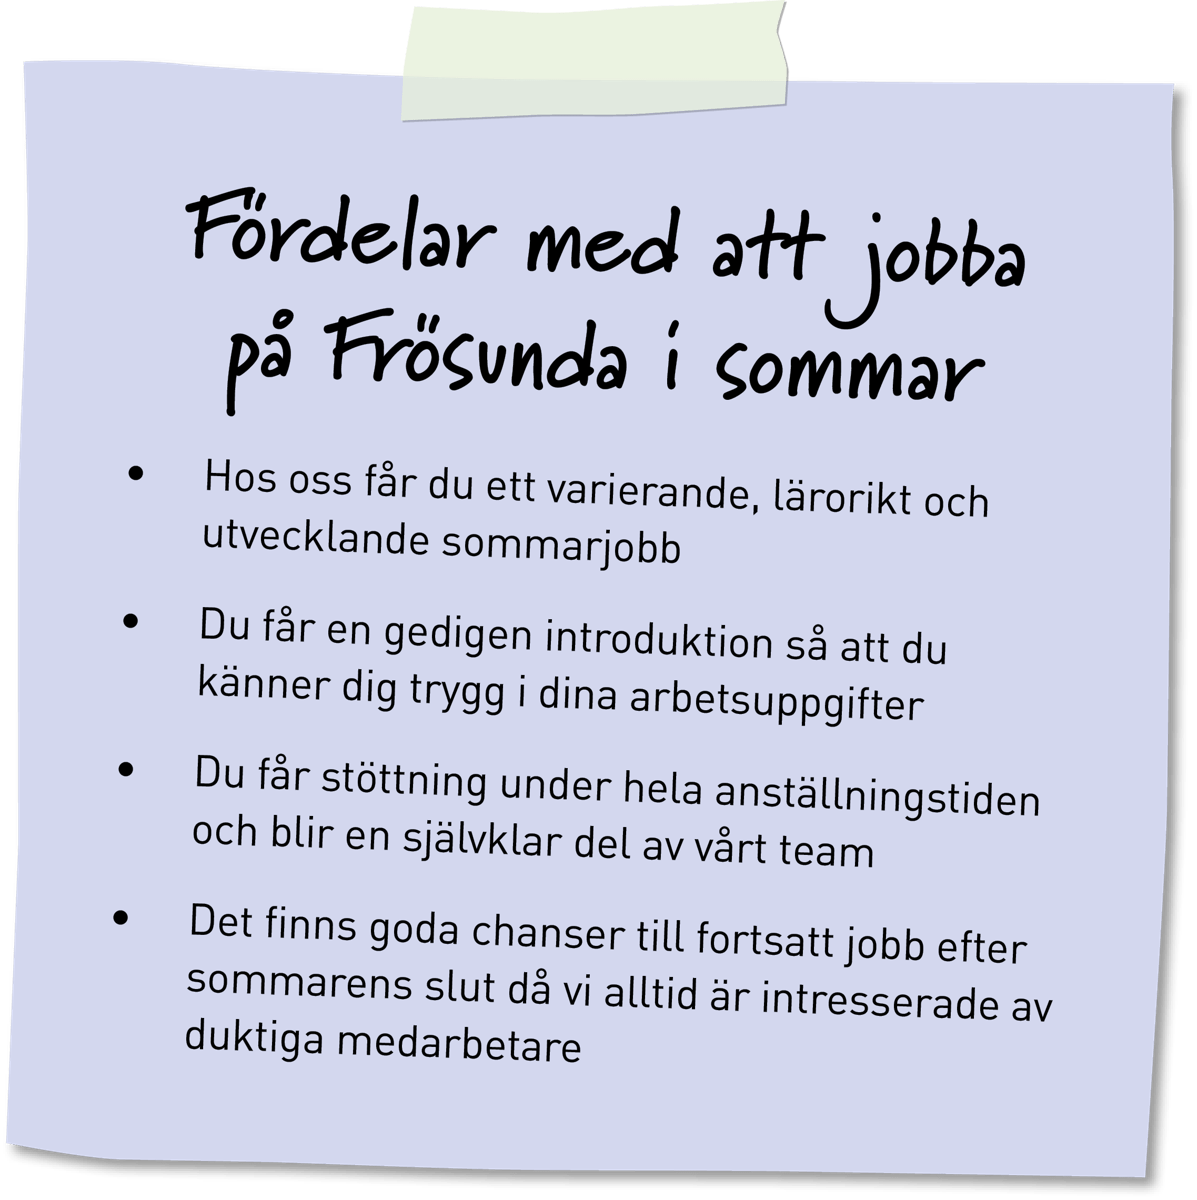 Post it - fördelar med att sommarjobba Frösunda ÄO.png